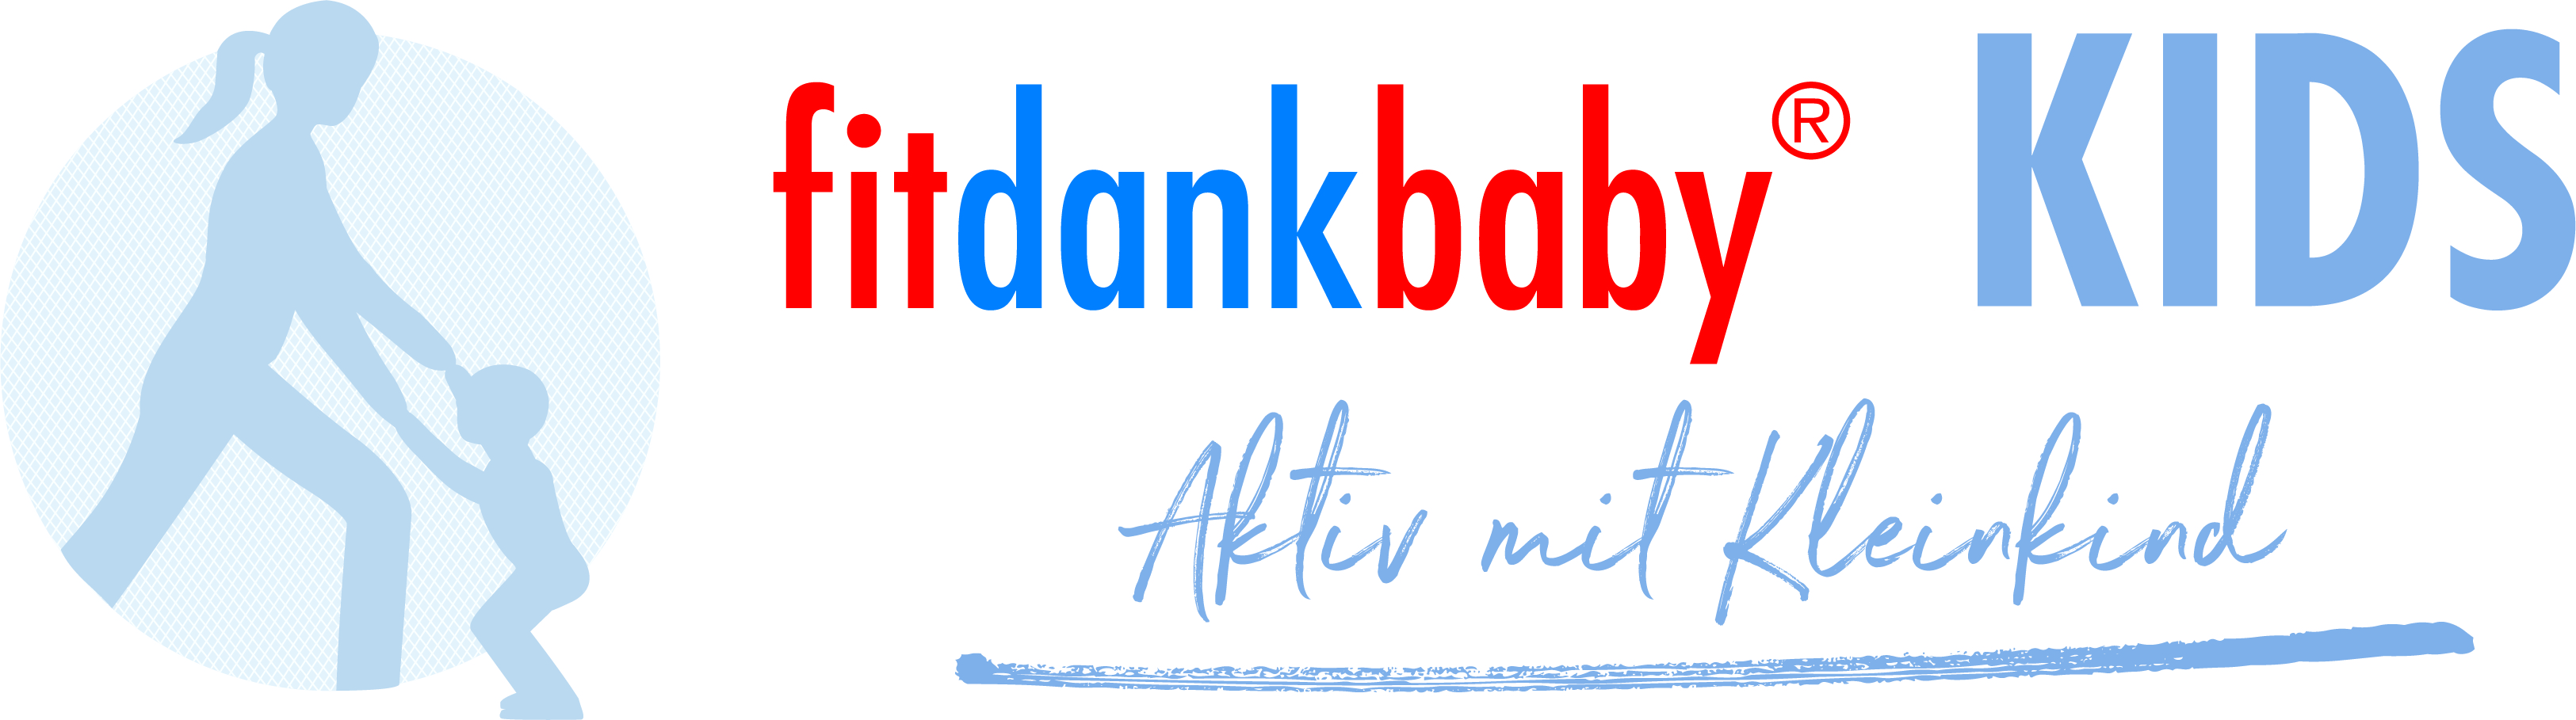 https://www.fitdankbaby.ch/dateien_land/de/download/KIDS/logos/Logo_Kids.jpg